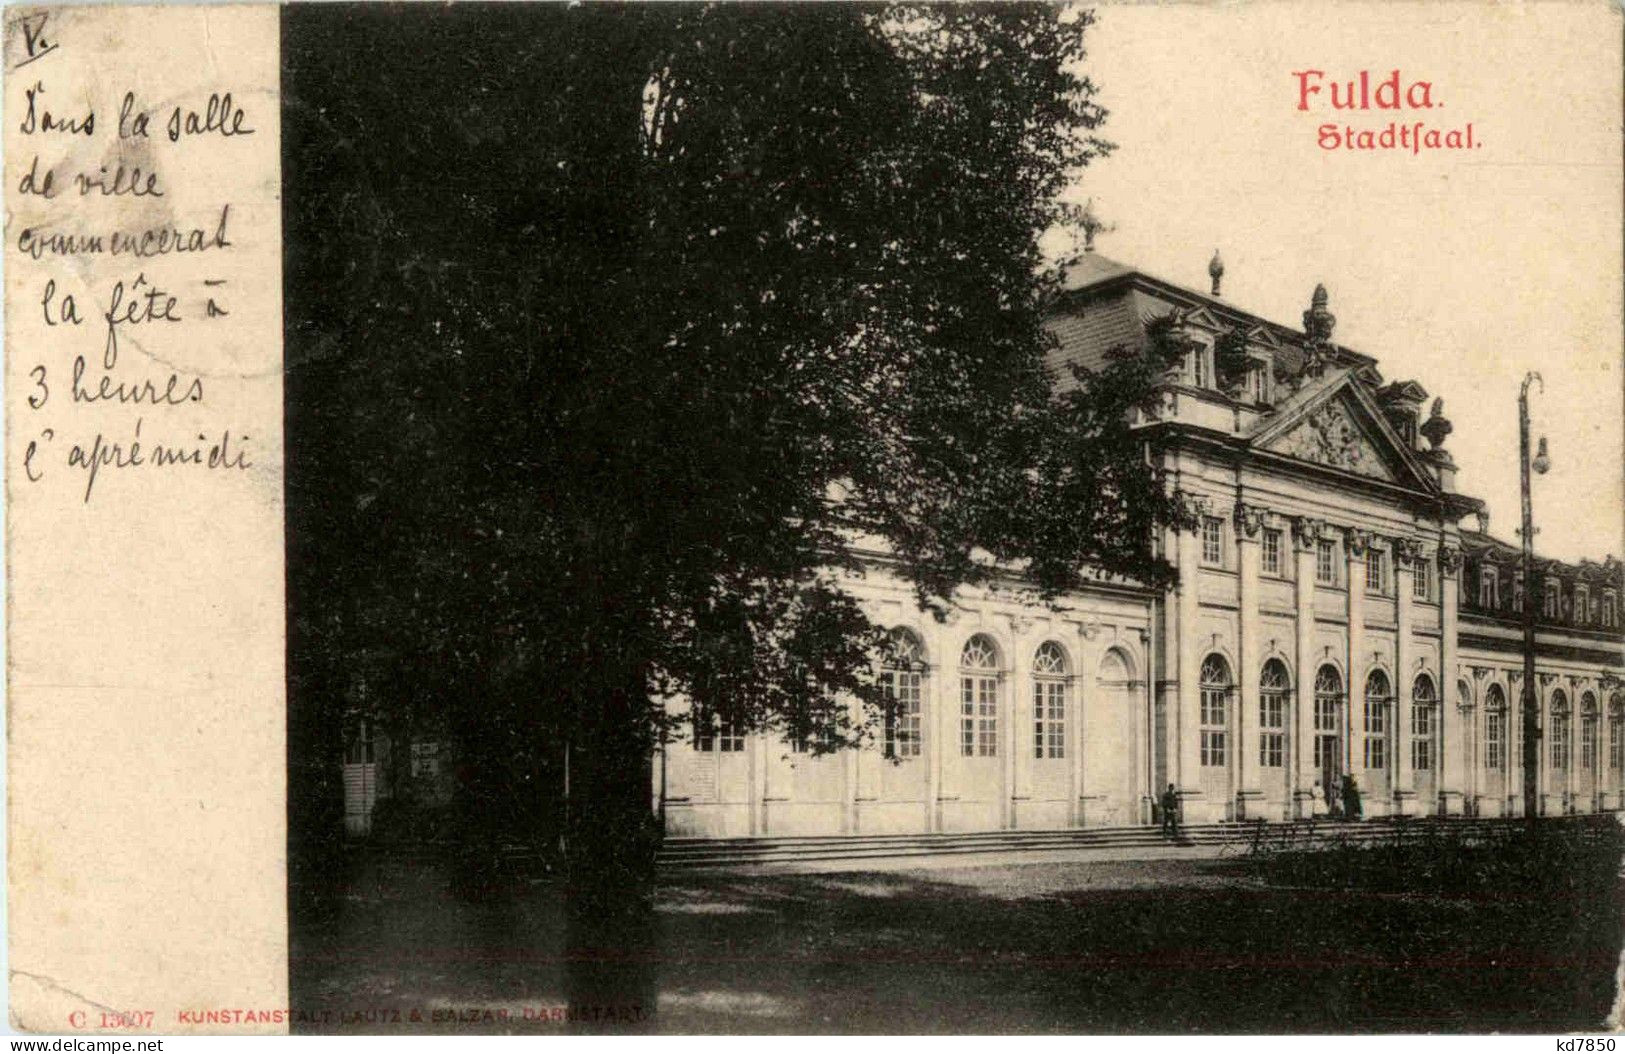 Fulda - Stadtsaal - Fulda